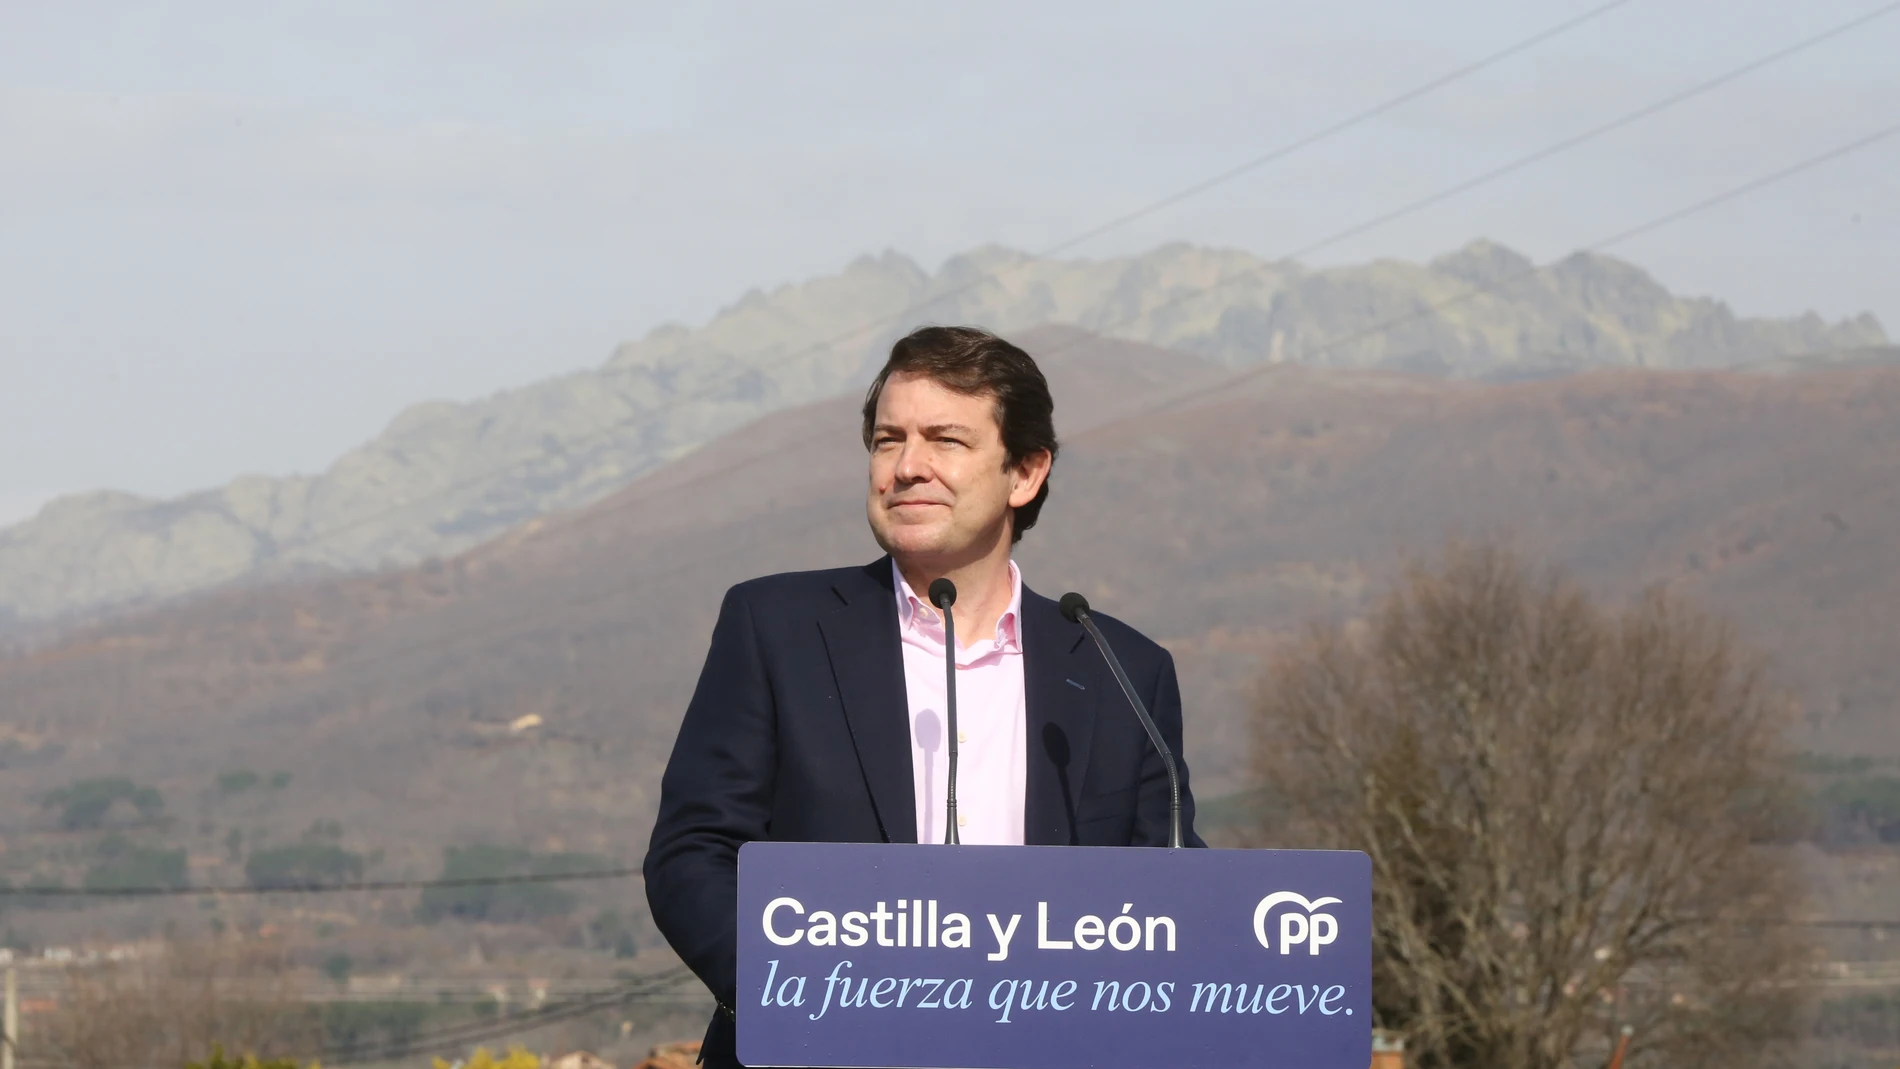 El candidato del Partido Popular a la Presidencia de la Junta, Alfonso Fernández Mañueco, visita el Valle abulense de El Tietar